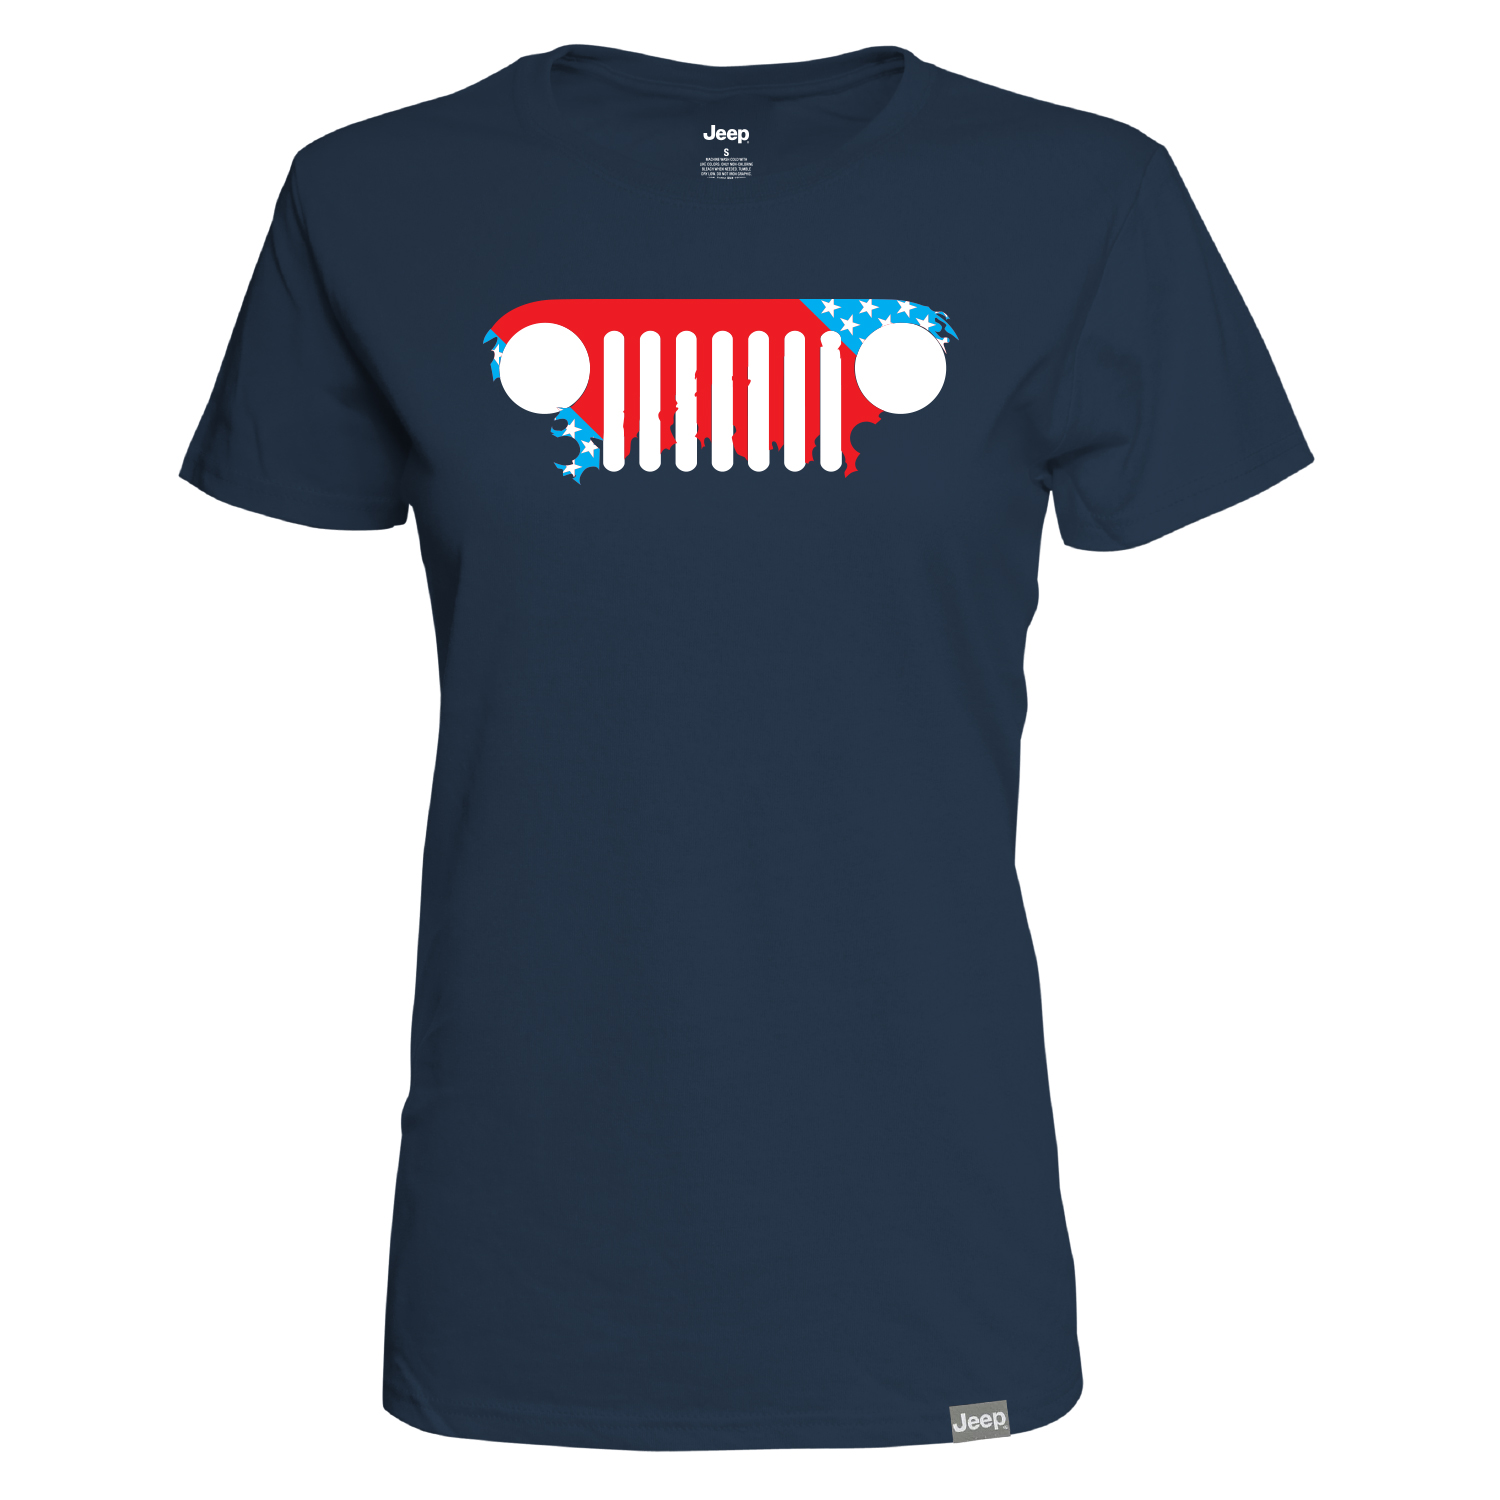 Women's American T-shirt